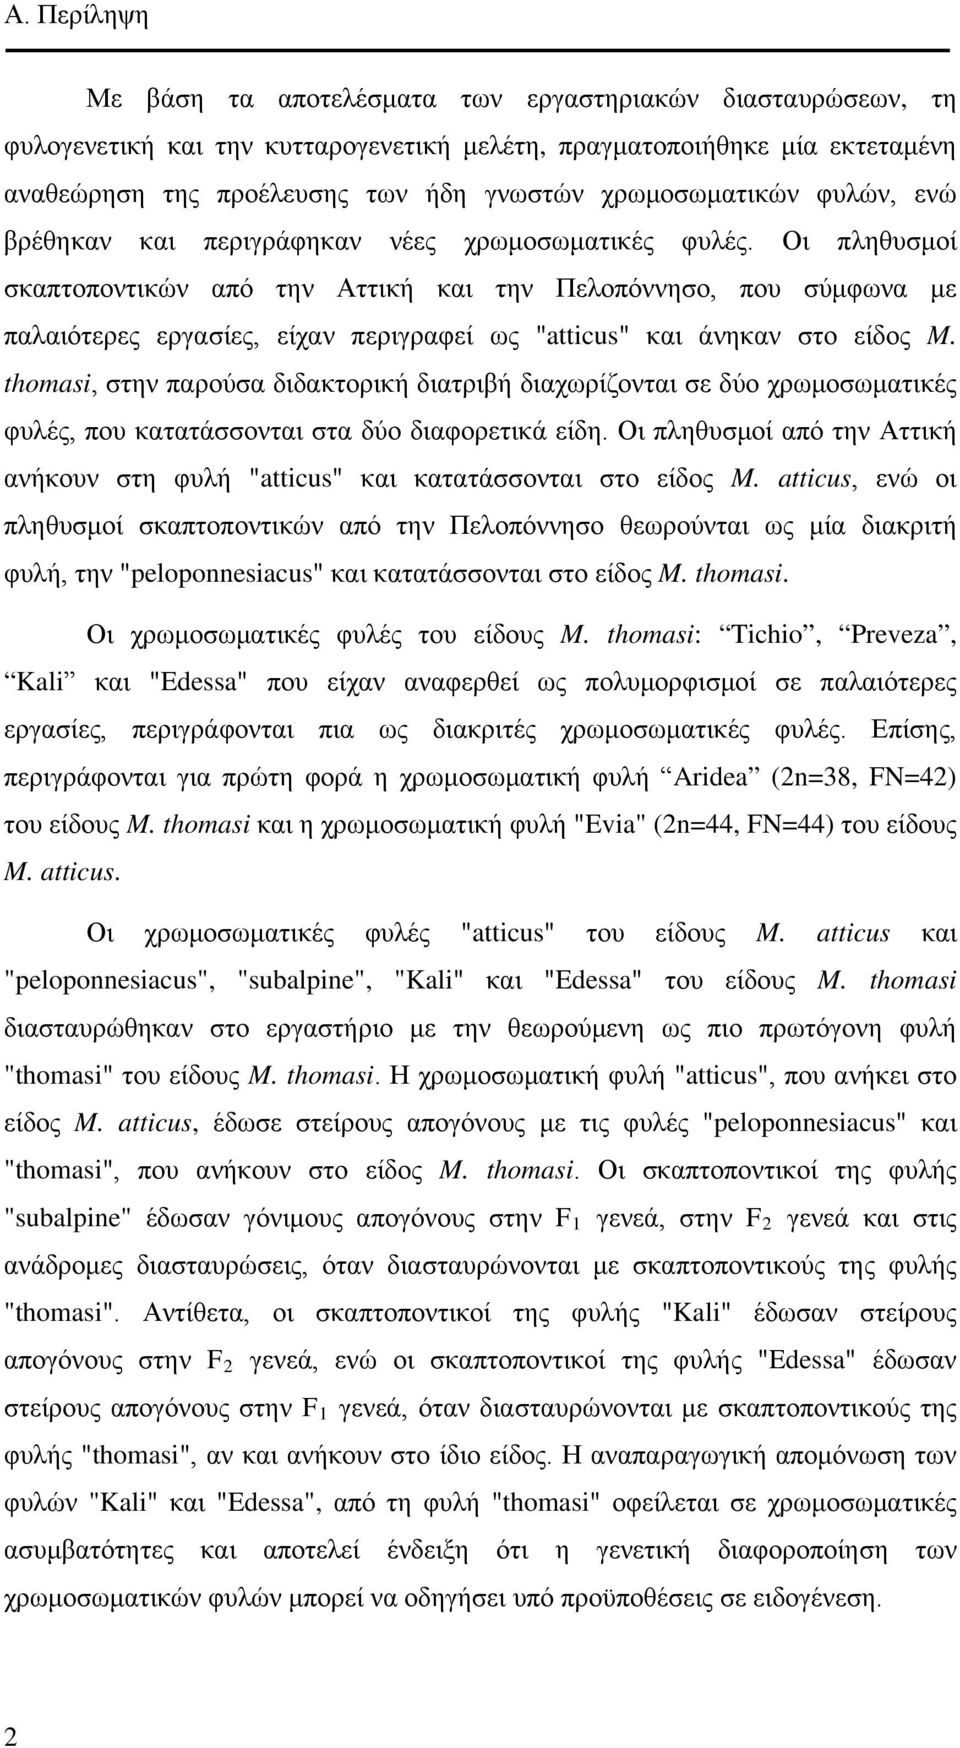 Οι πληθυσμοί σκαπτοποντικών από την Αττική και την Πελοπόννησο, που σύμφωνα με παλαιότερες εργασίες, είχαν περιγραφεί ως "atticus" και άνηκαν στο είδος M.